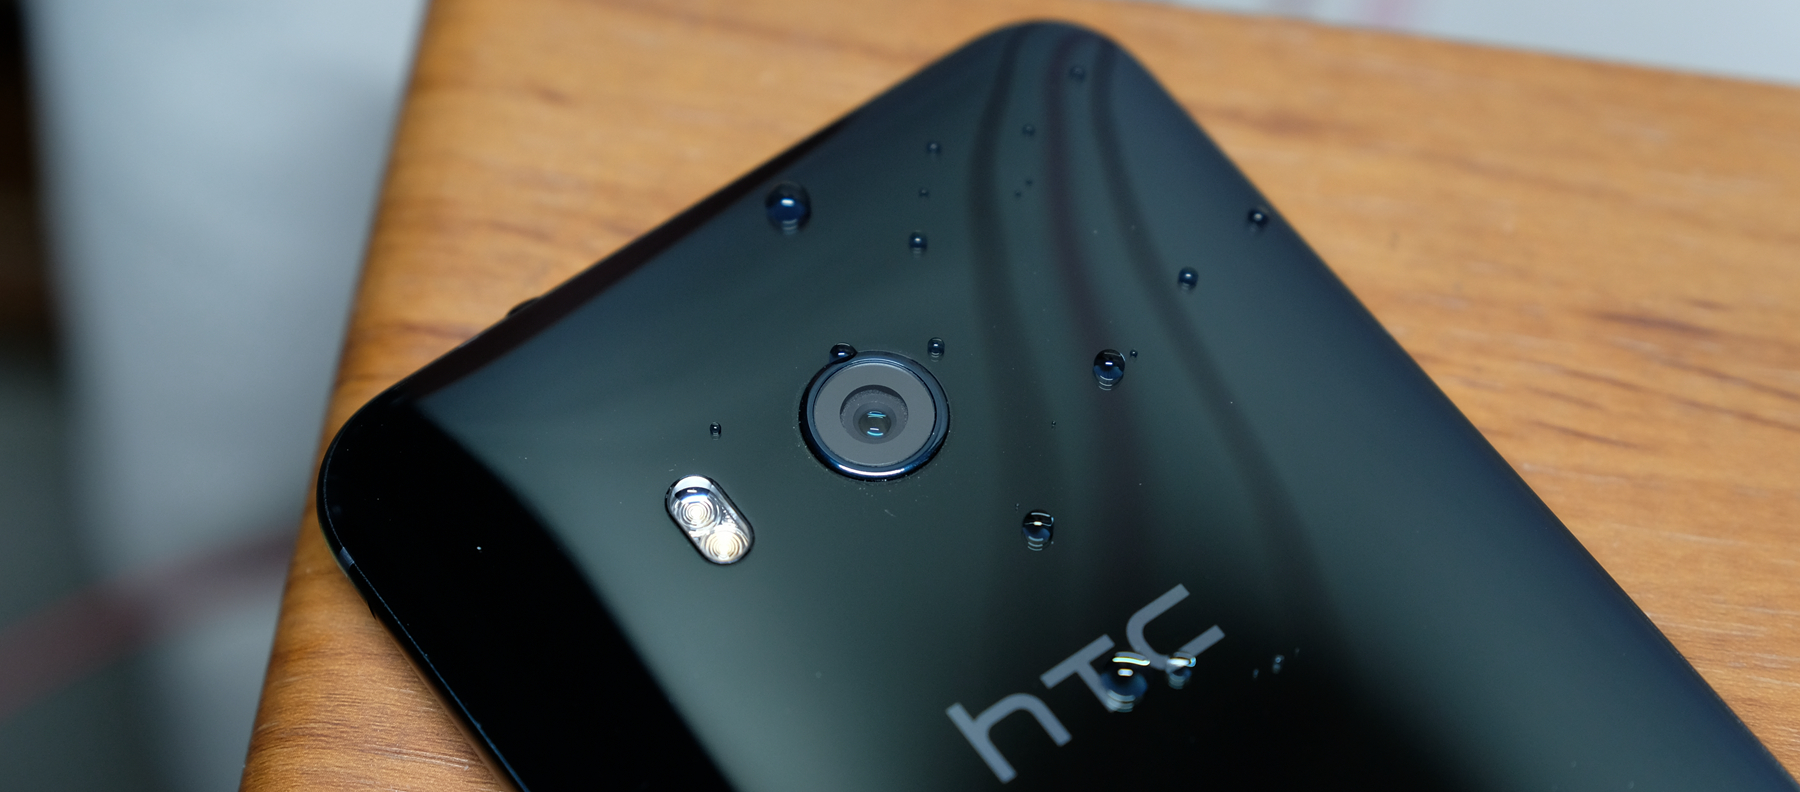 逆袭！HTC U11-Pixel XL-iPhone夜拍对比